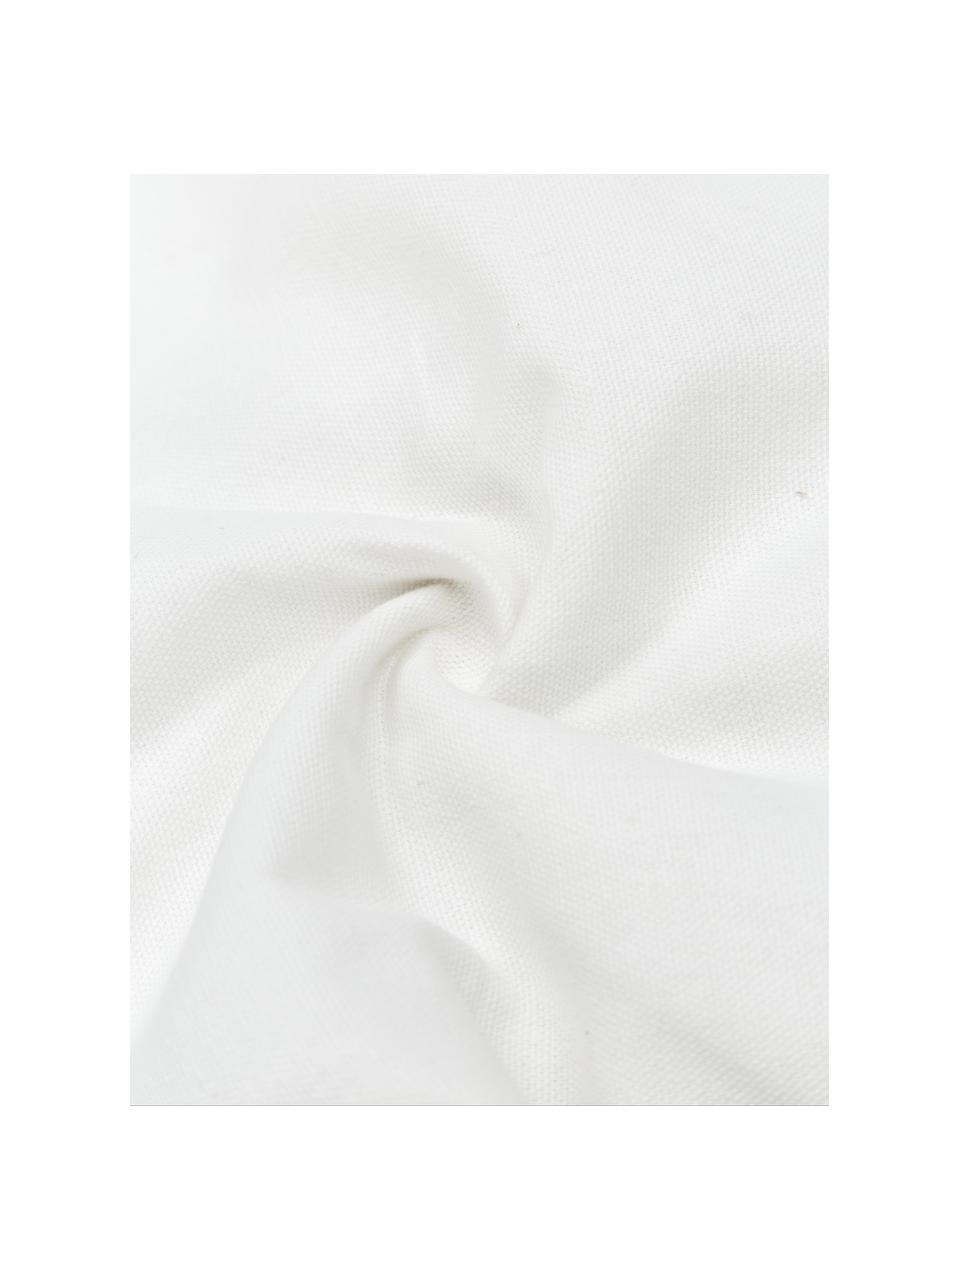 Baumwoll-Kissenhülle Viale mit Quasten, 100% Baumwolle, Weiss, Beige, B 40 x L 60 cm